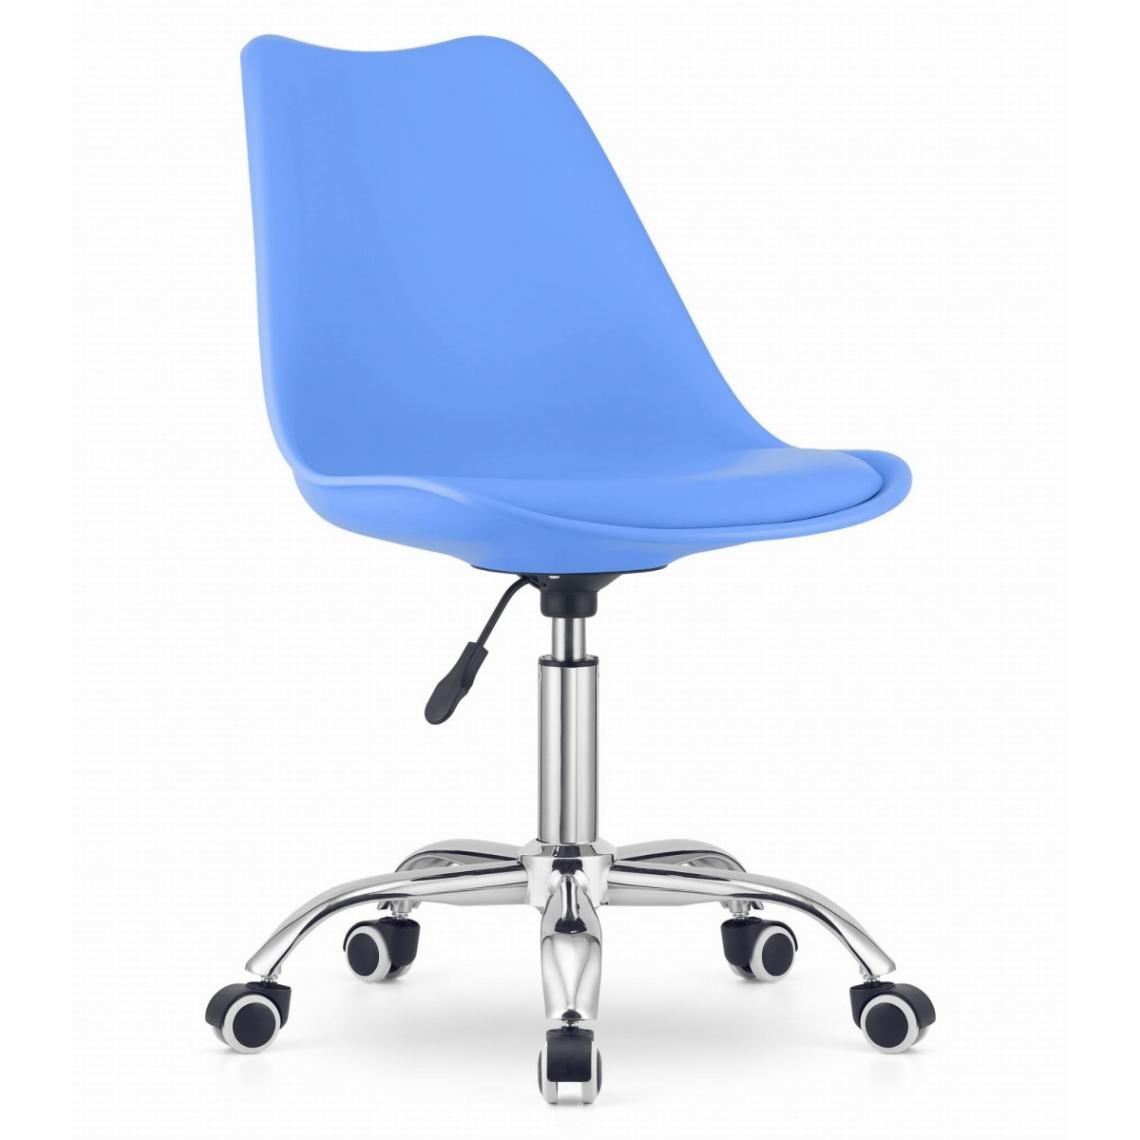 Hucoco - ALBADI - Fauteuil pivotant style moderne bureau/chambre d'enfant - 91.5x56.5x48.5 cm - Chaise de bureau - Bleu - Chaises